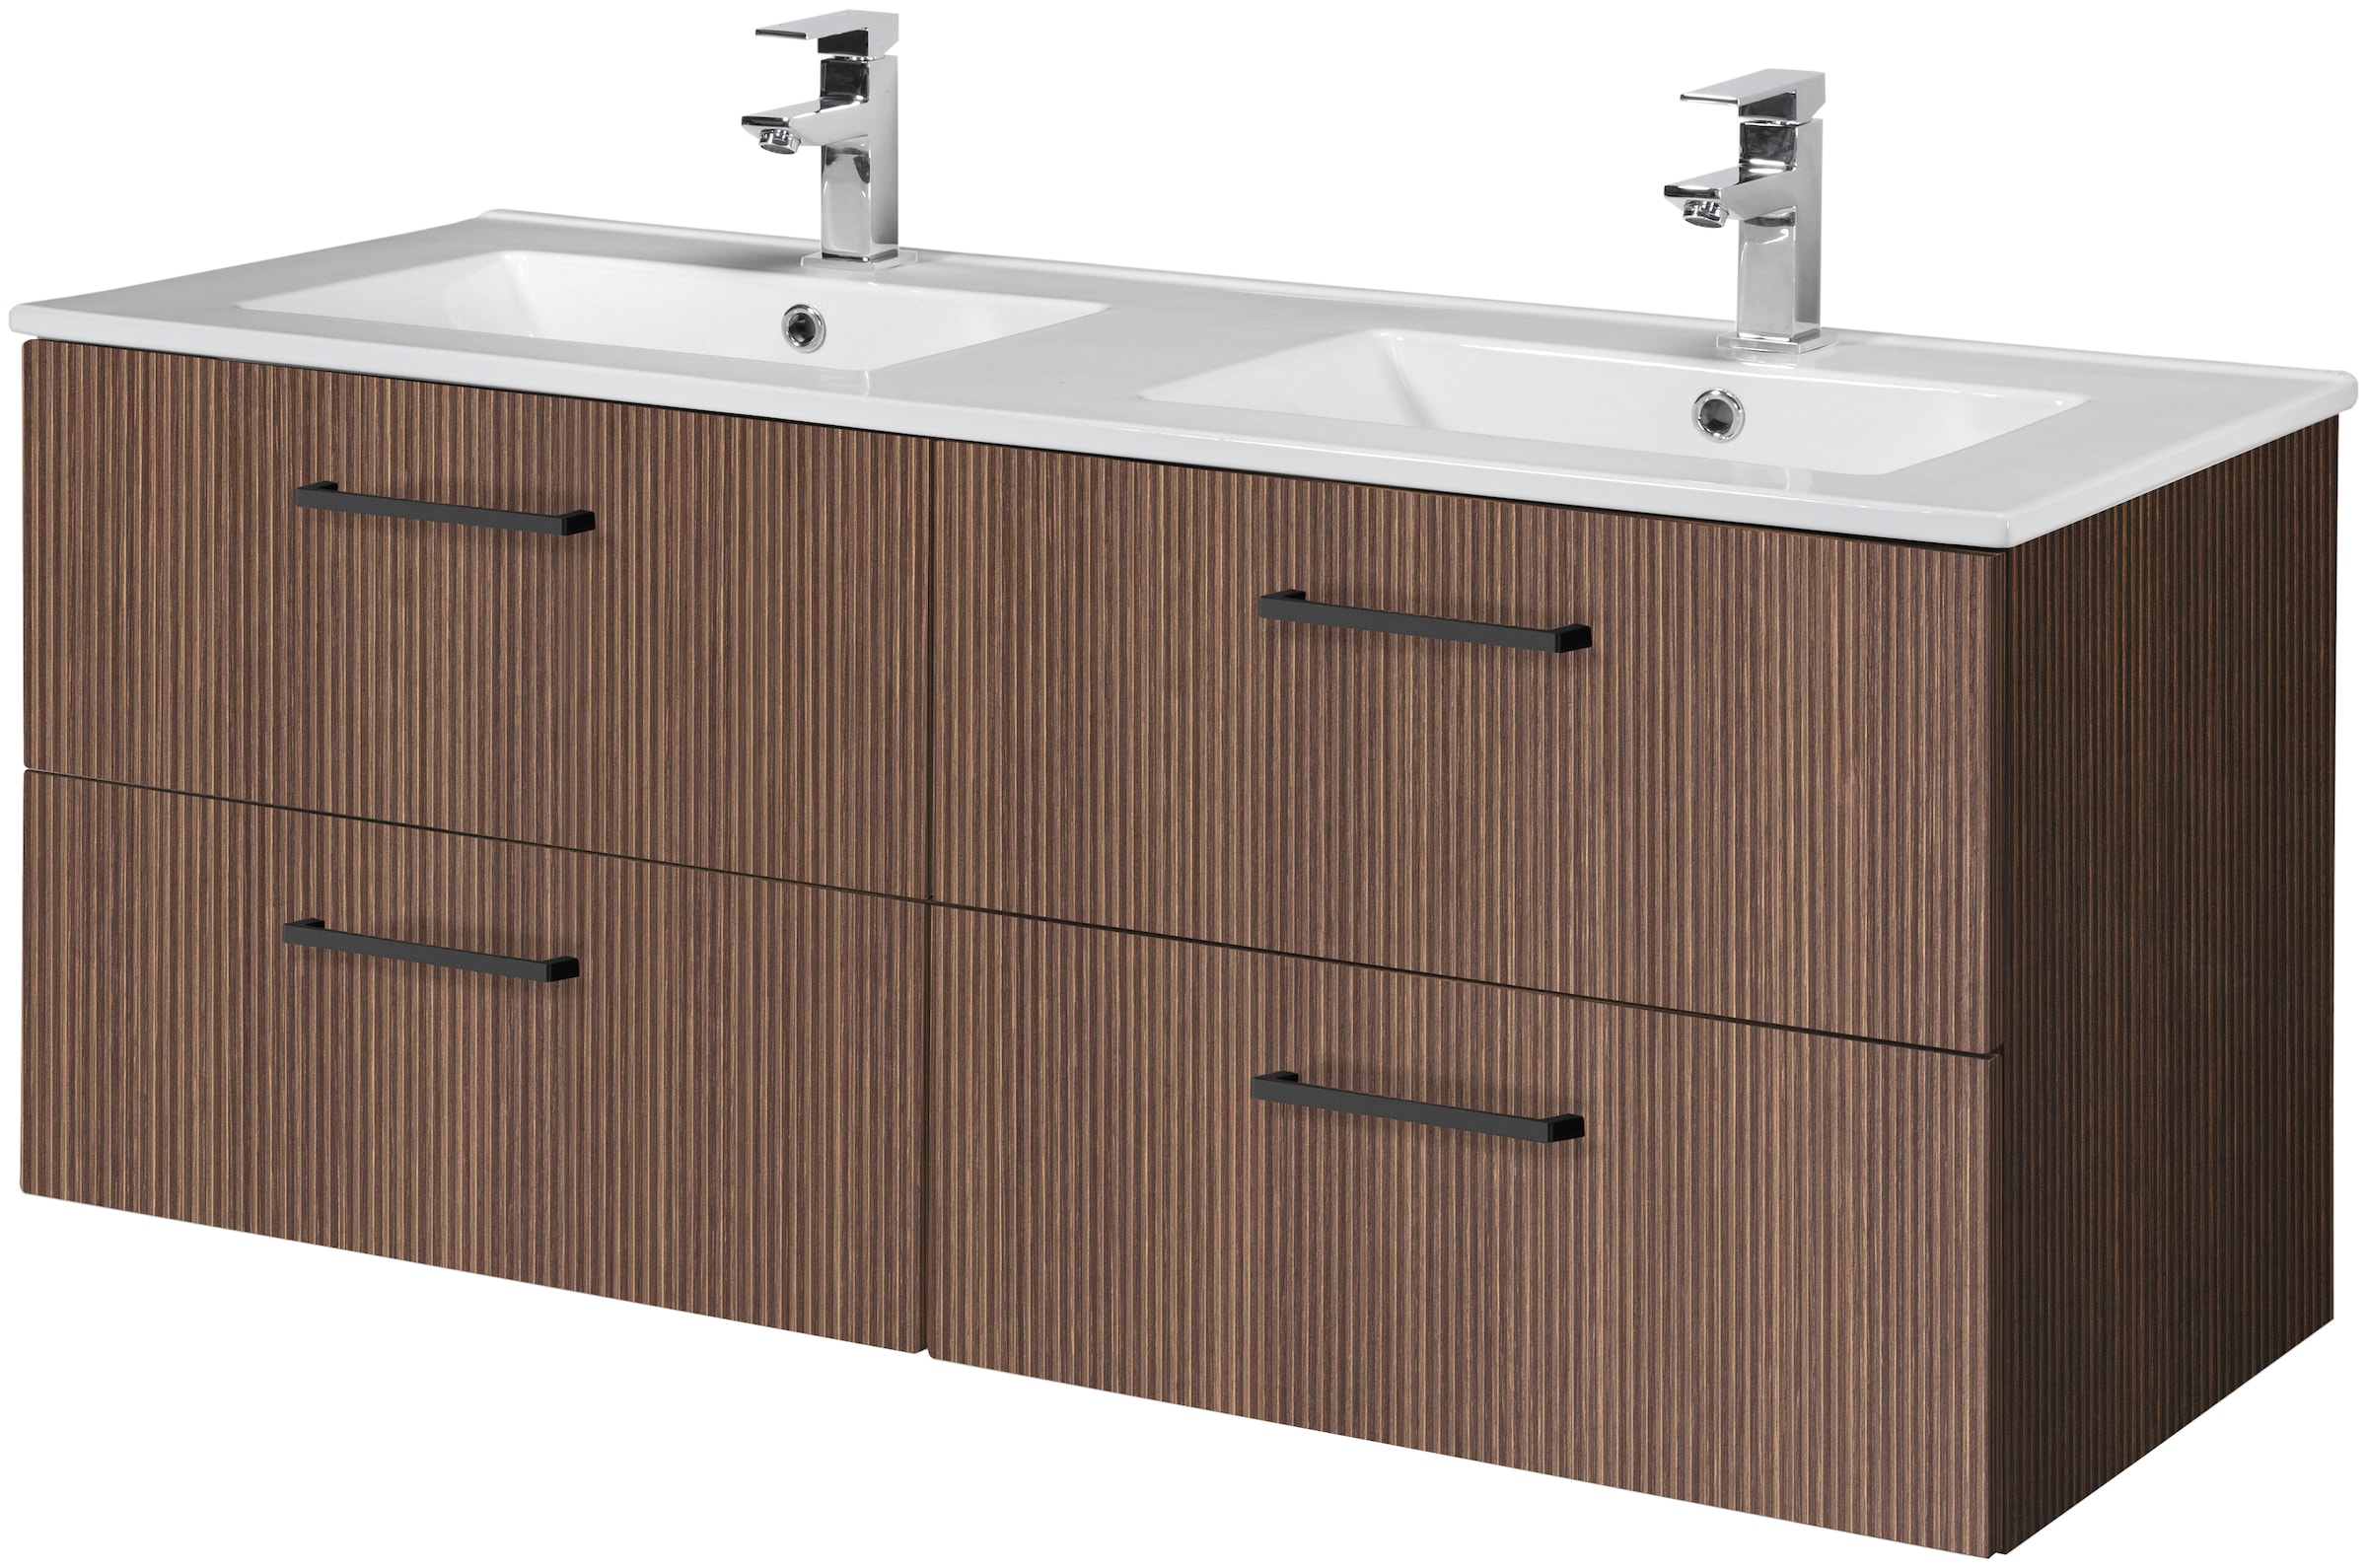 HELD MÖBEL Doppelwaschtisch "Trento", Badmöbel in Breite 120 cm, 2 Doppel-Waschbecken zur Auswahl